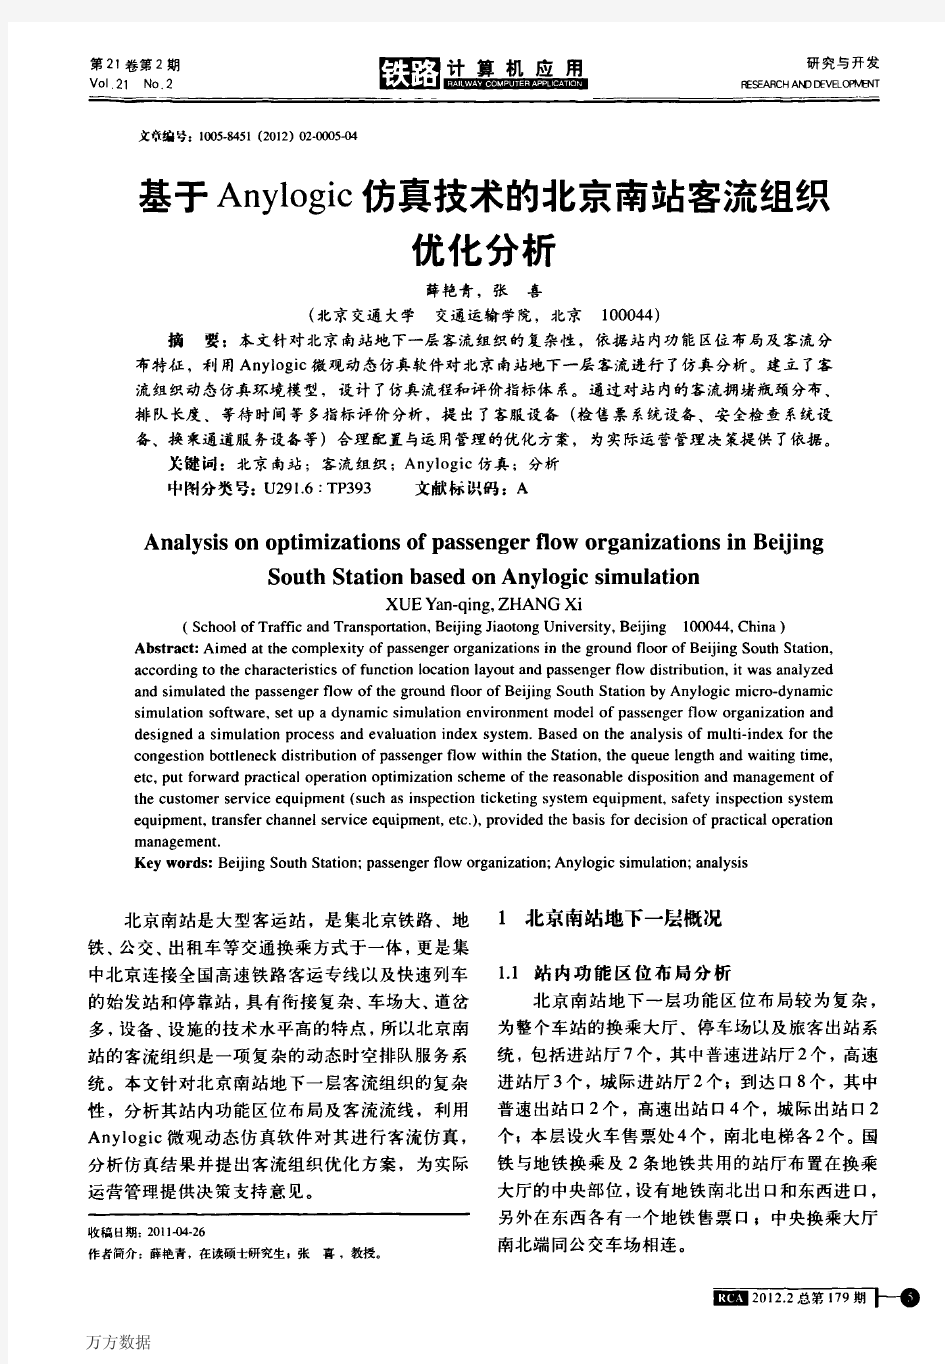 基于Anylogic仿真技术的北京南站客流组织优化分析